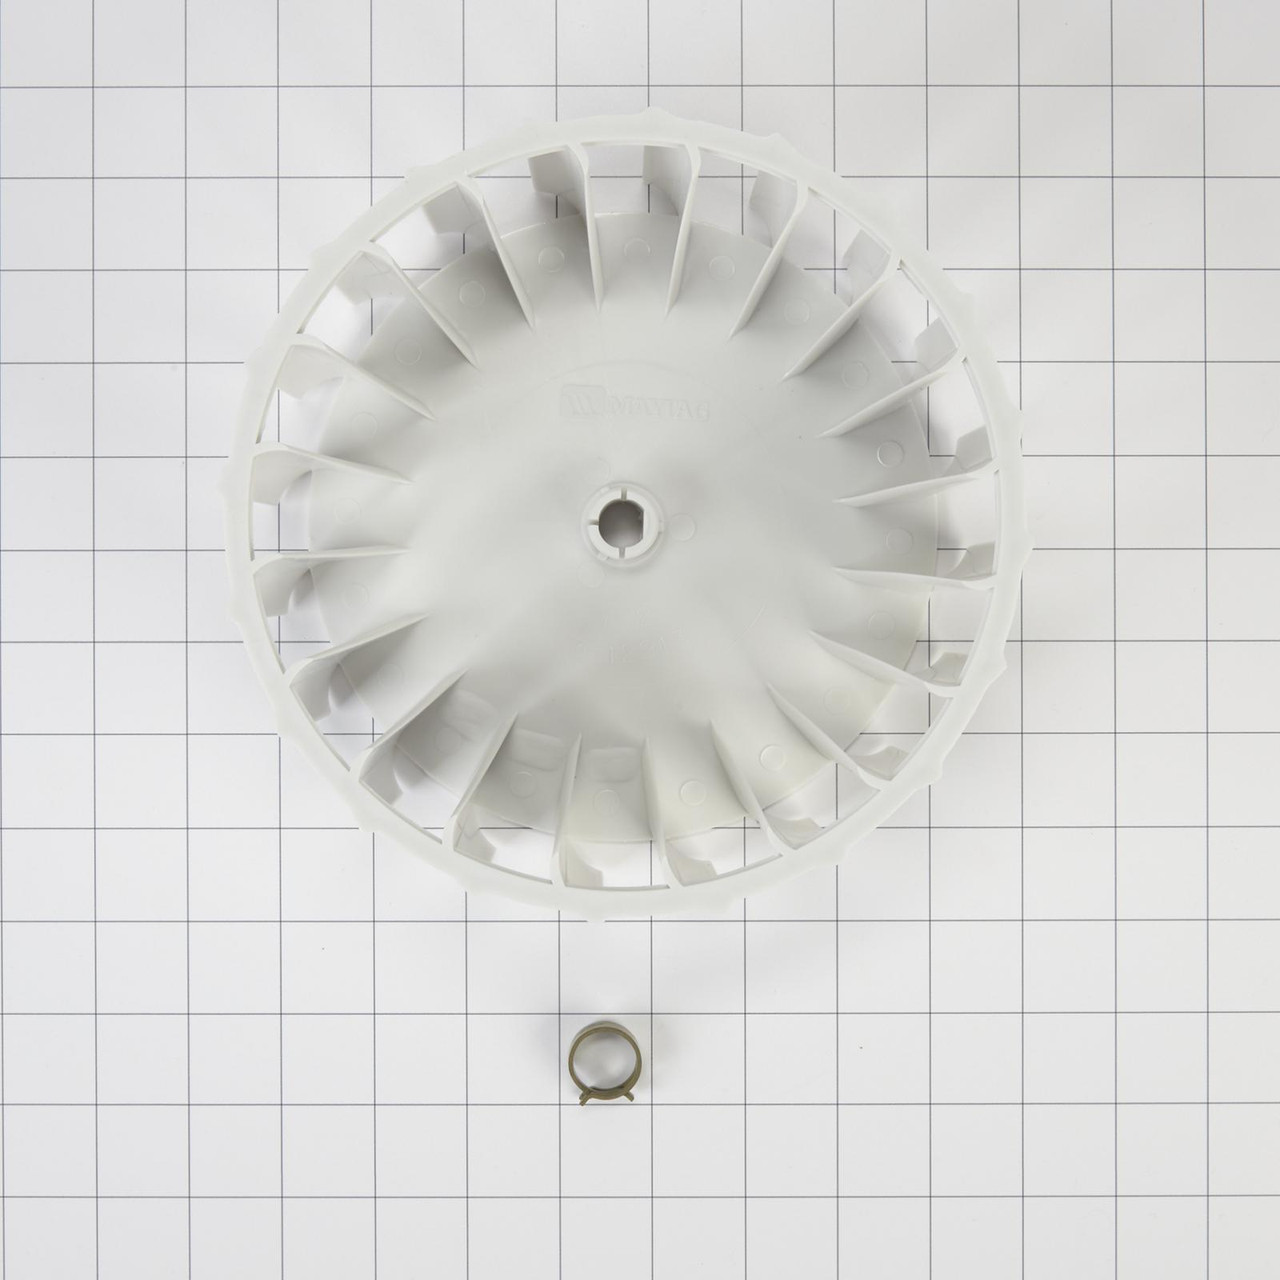 Whirlpool Y303836 - Dryer Blower Wheel - Image # 2